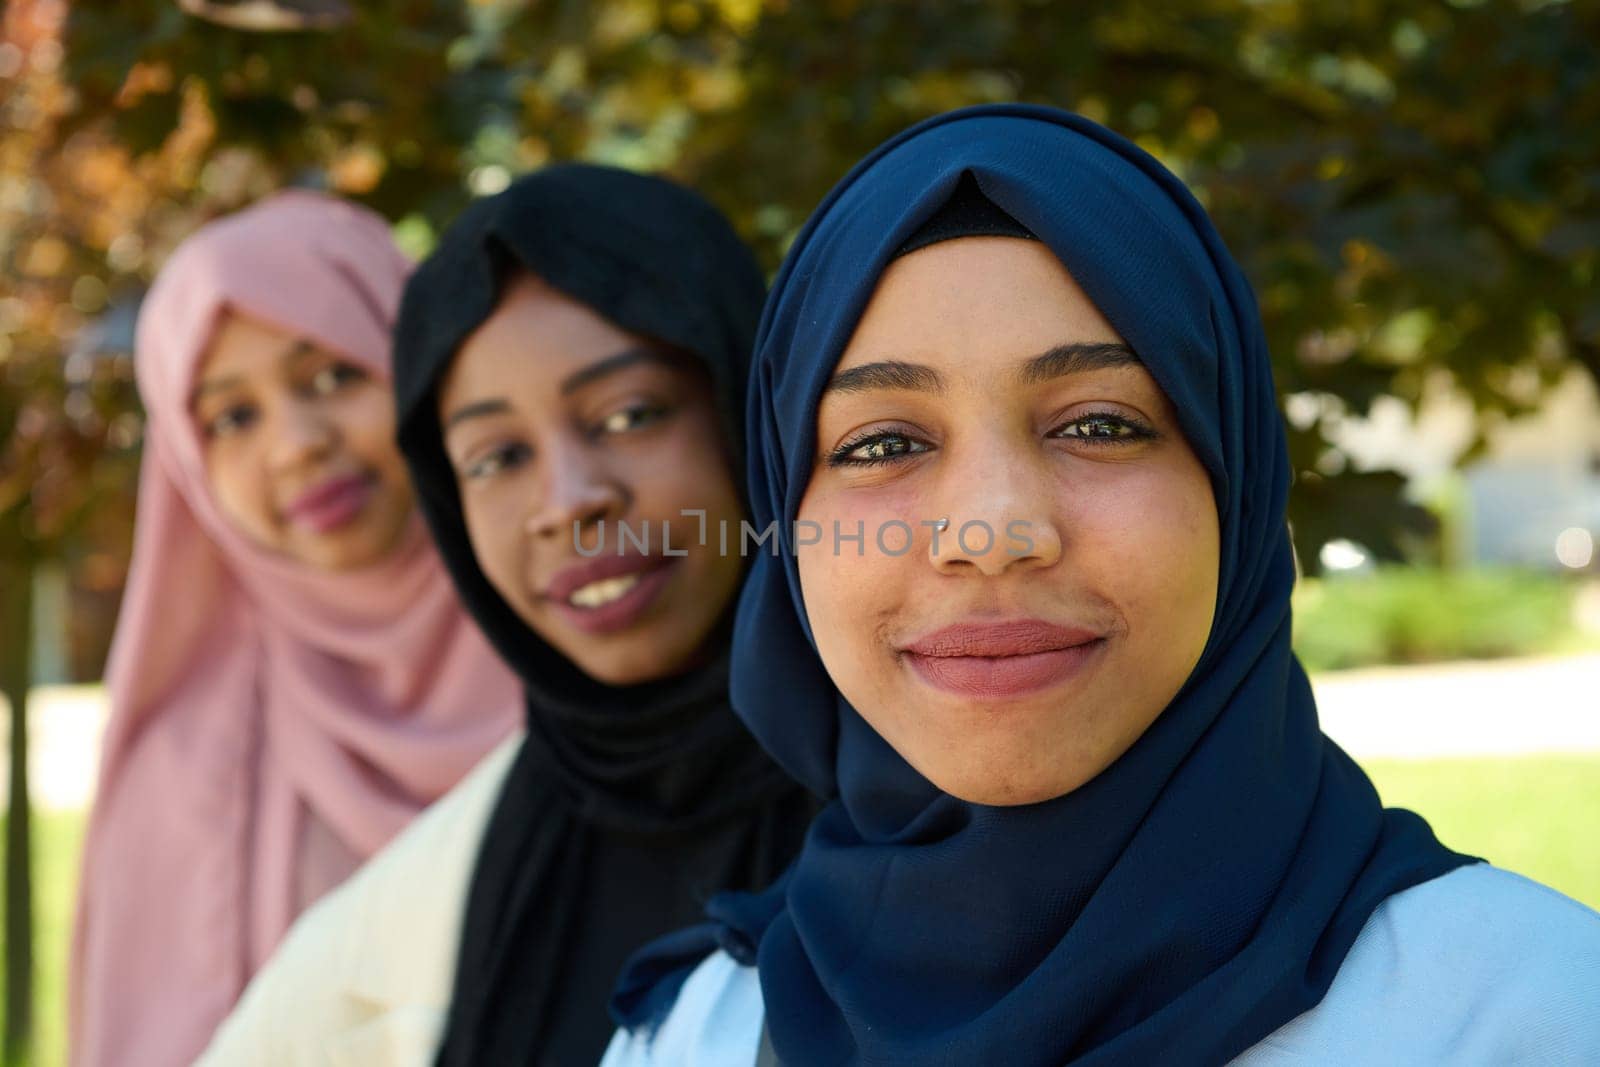 Sisterhood Snapshot: Middle Eastern Muslim Women in Hijab Capturing Unity by dotshock